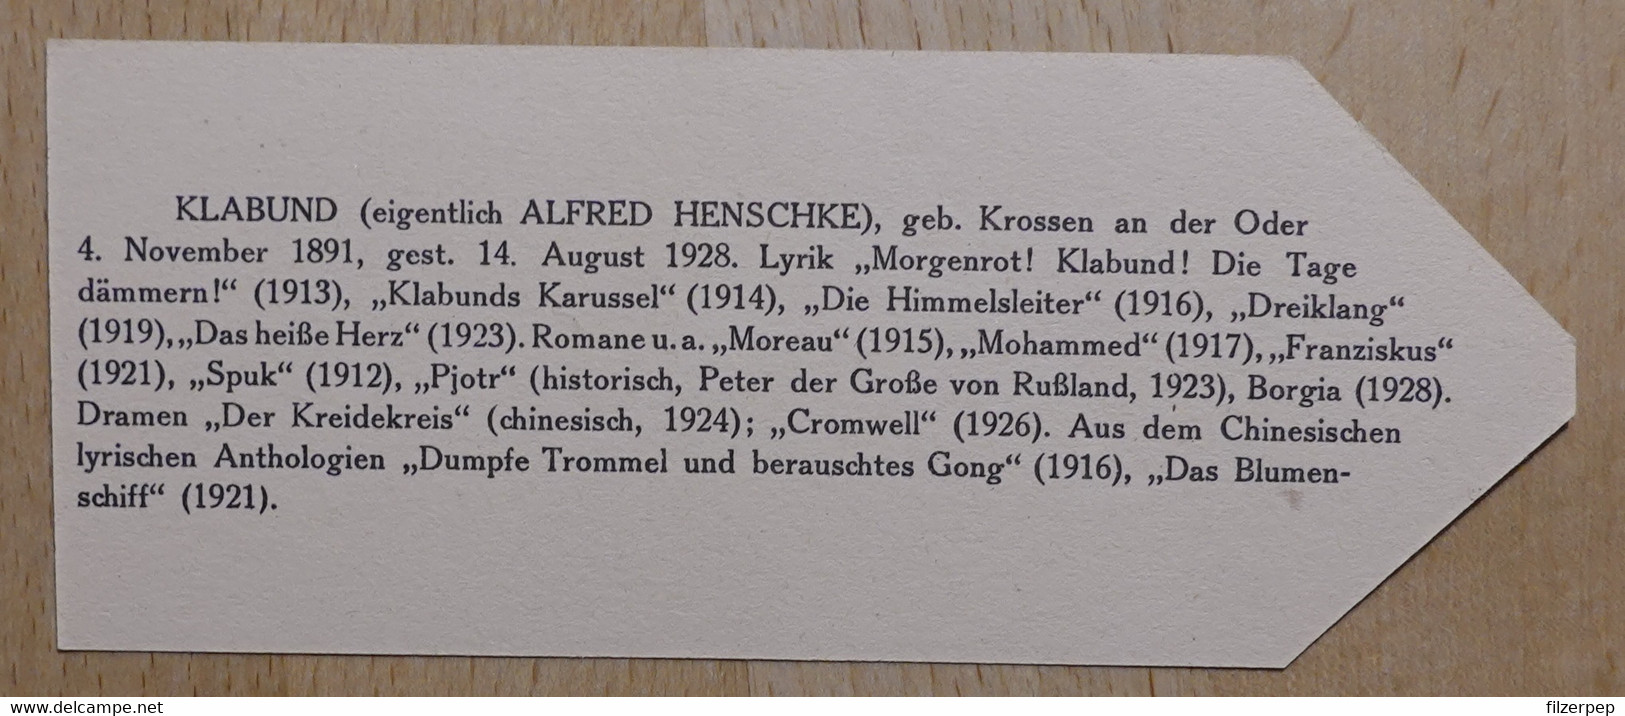 Klabund Alfred Henschke Krossen An Der Oder - 99 - Olleschau Lesezeichen Bookmark Signet Marque Page Portrait - Segnalibri